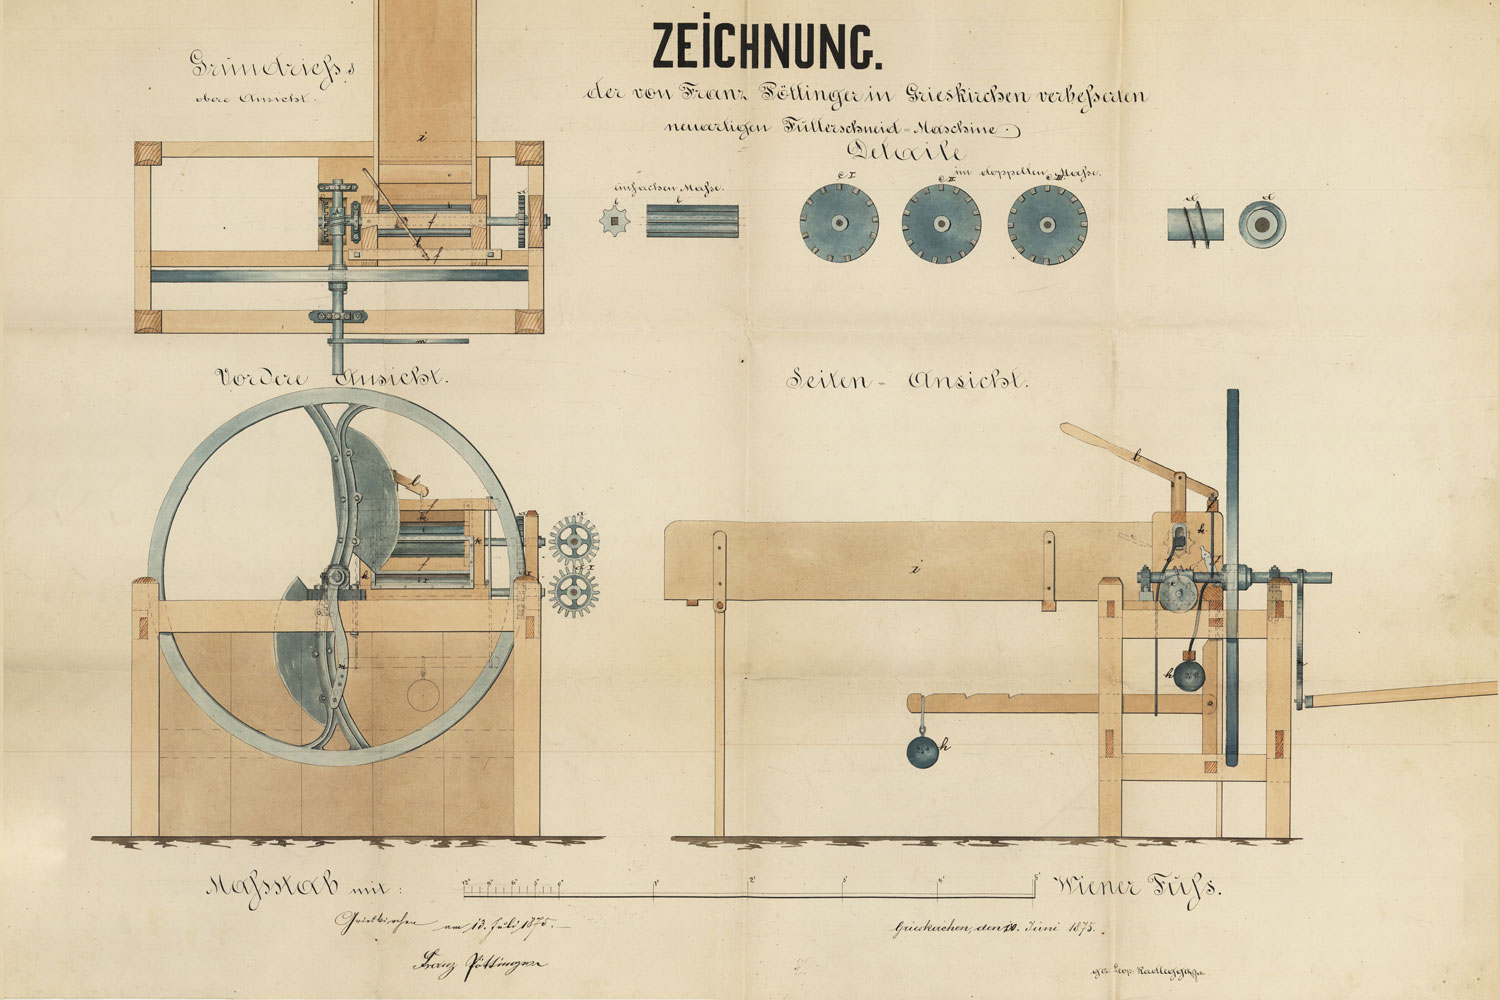 1875: První patent